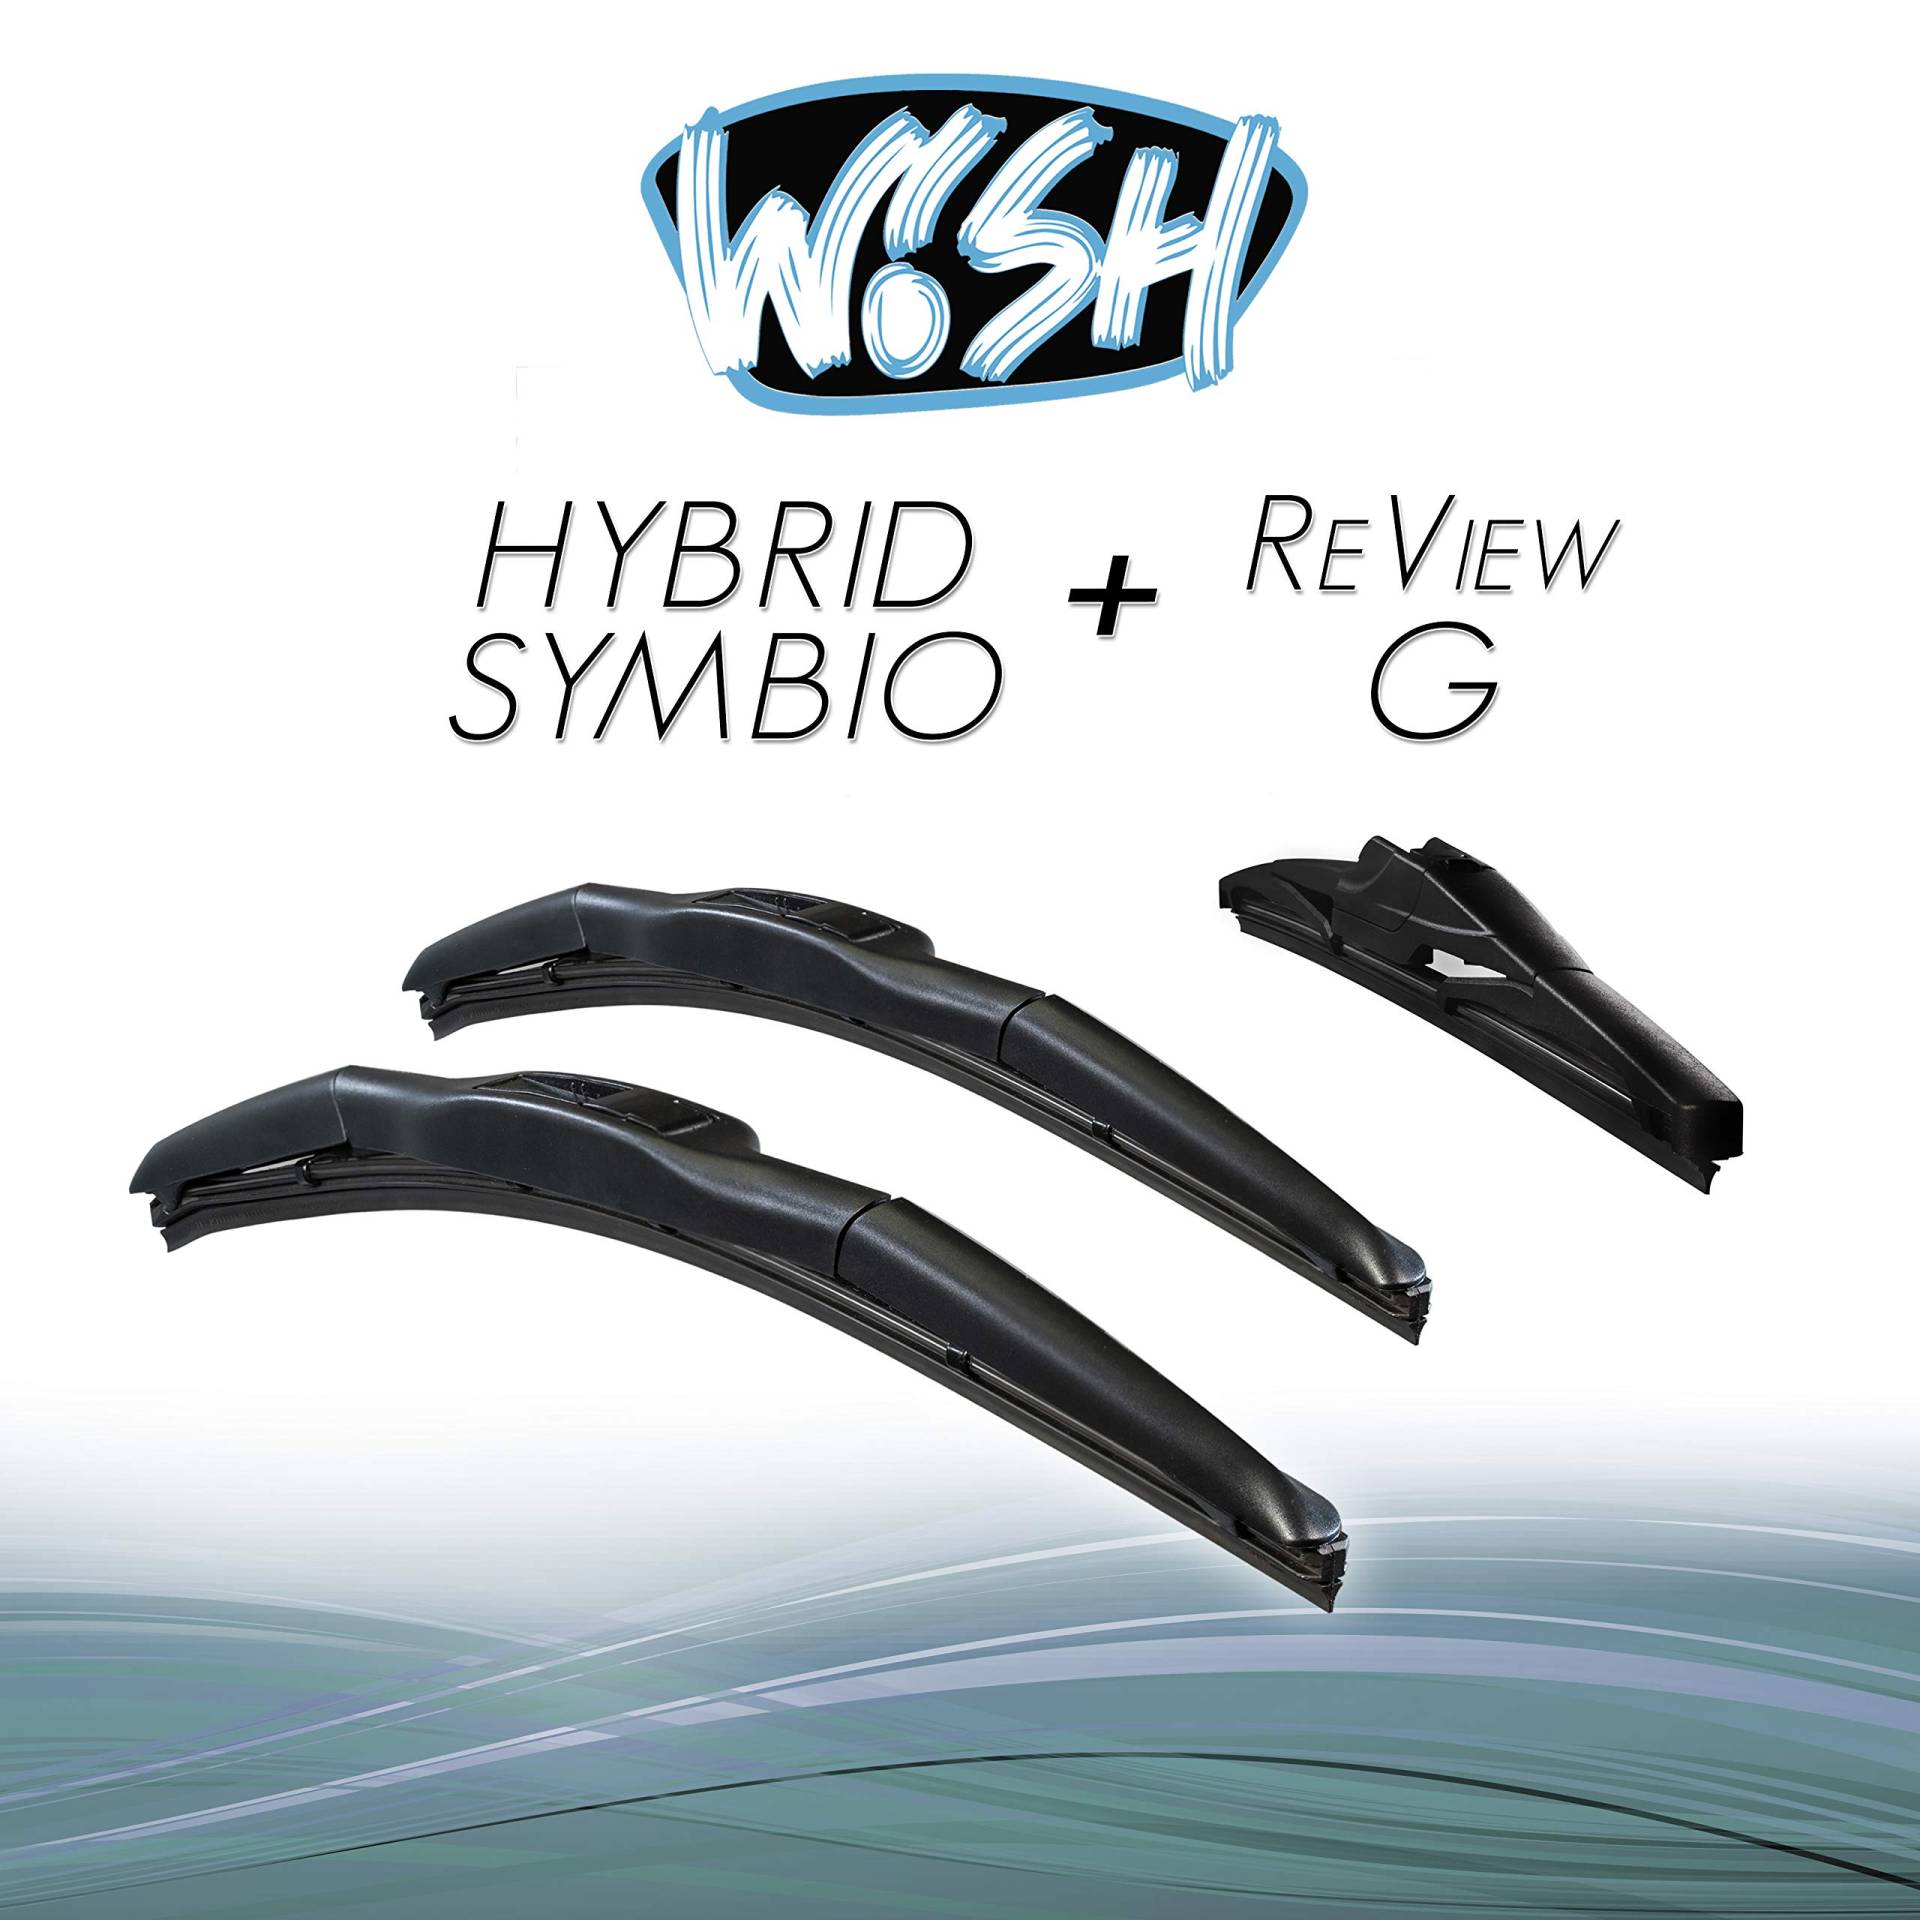 Wish® Hybrid Symbio Satz Front + Heck Scheibenwischer Länge: 26" 650mm / 14" 350mm / 9" 230mm Wischblätter Vorne und Hinten Hybrid-Scheibenwischer + Review G HS26.14.9RG von Wish